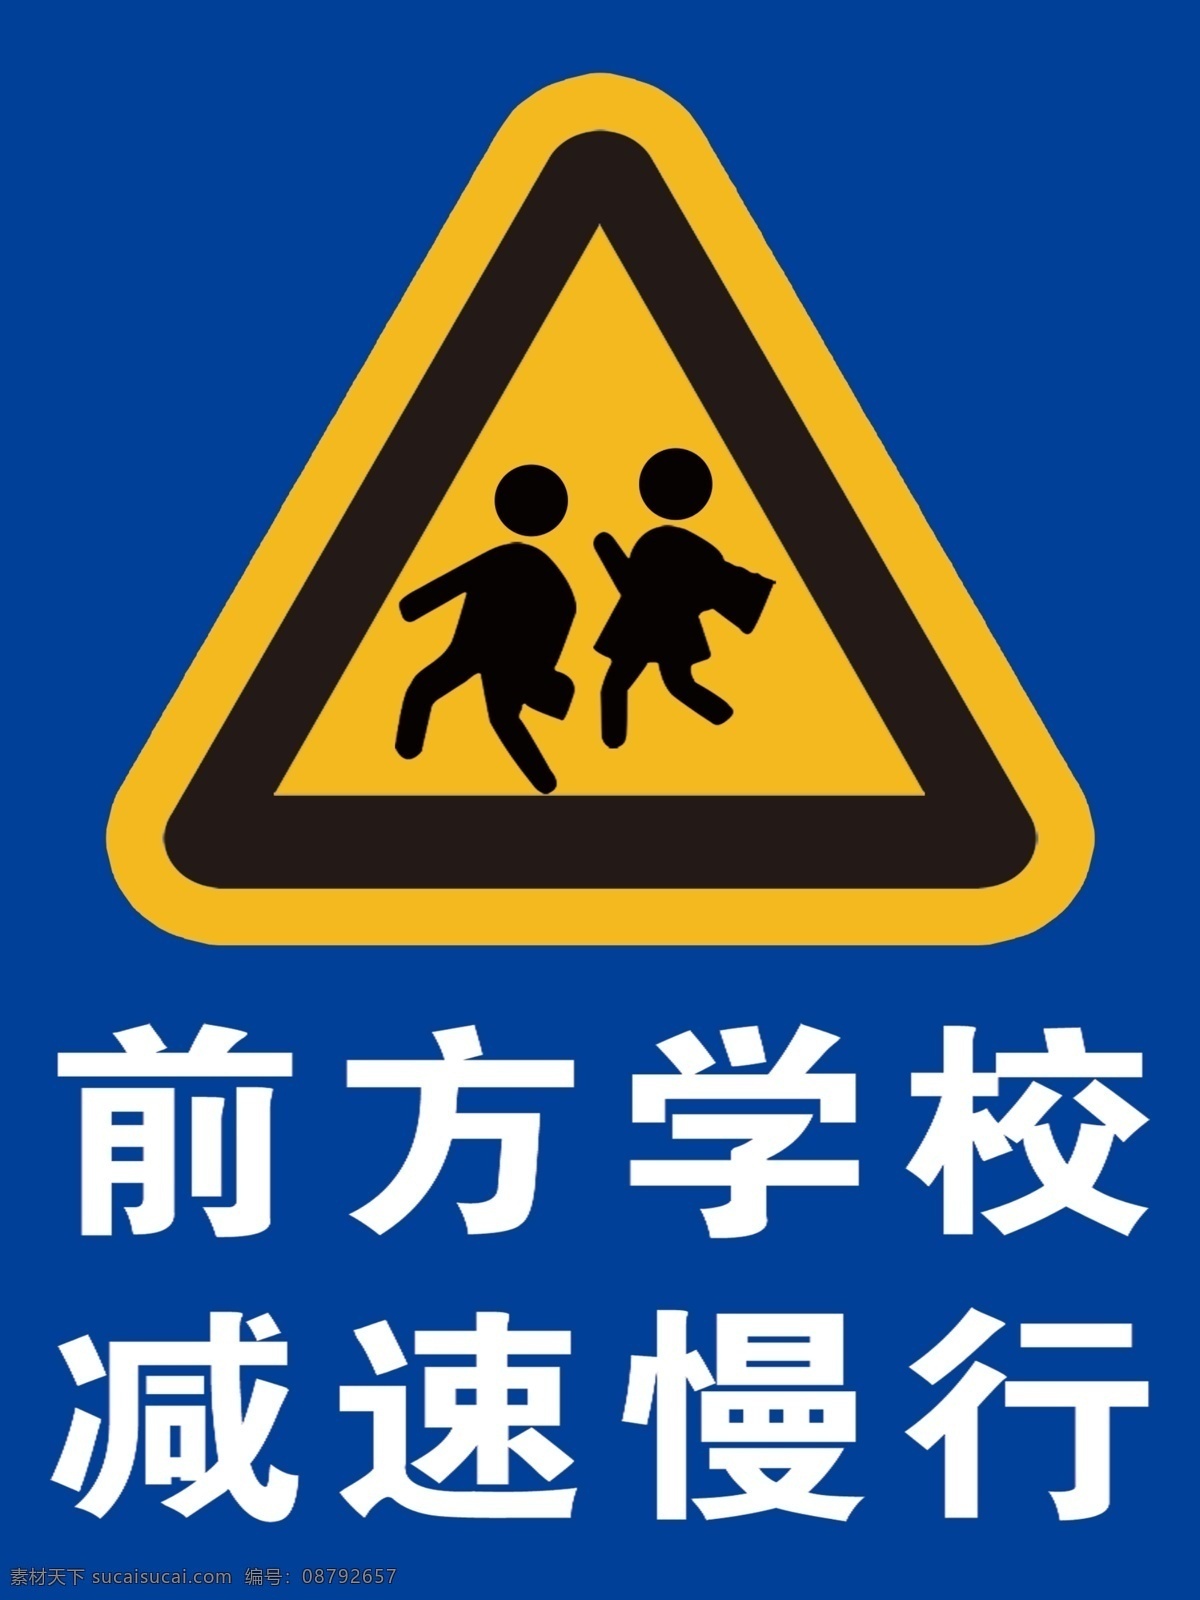 交通标示 前方学校 减速慢行 小孩 蓝底 室外广告设计